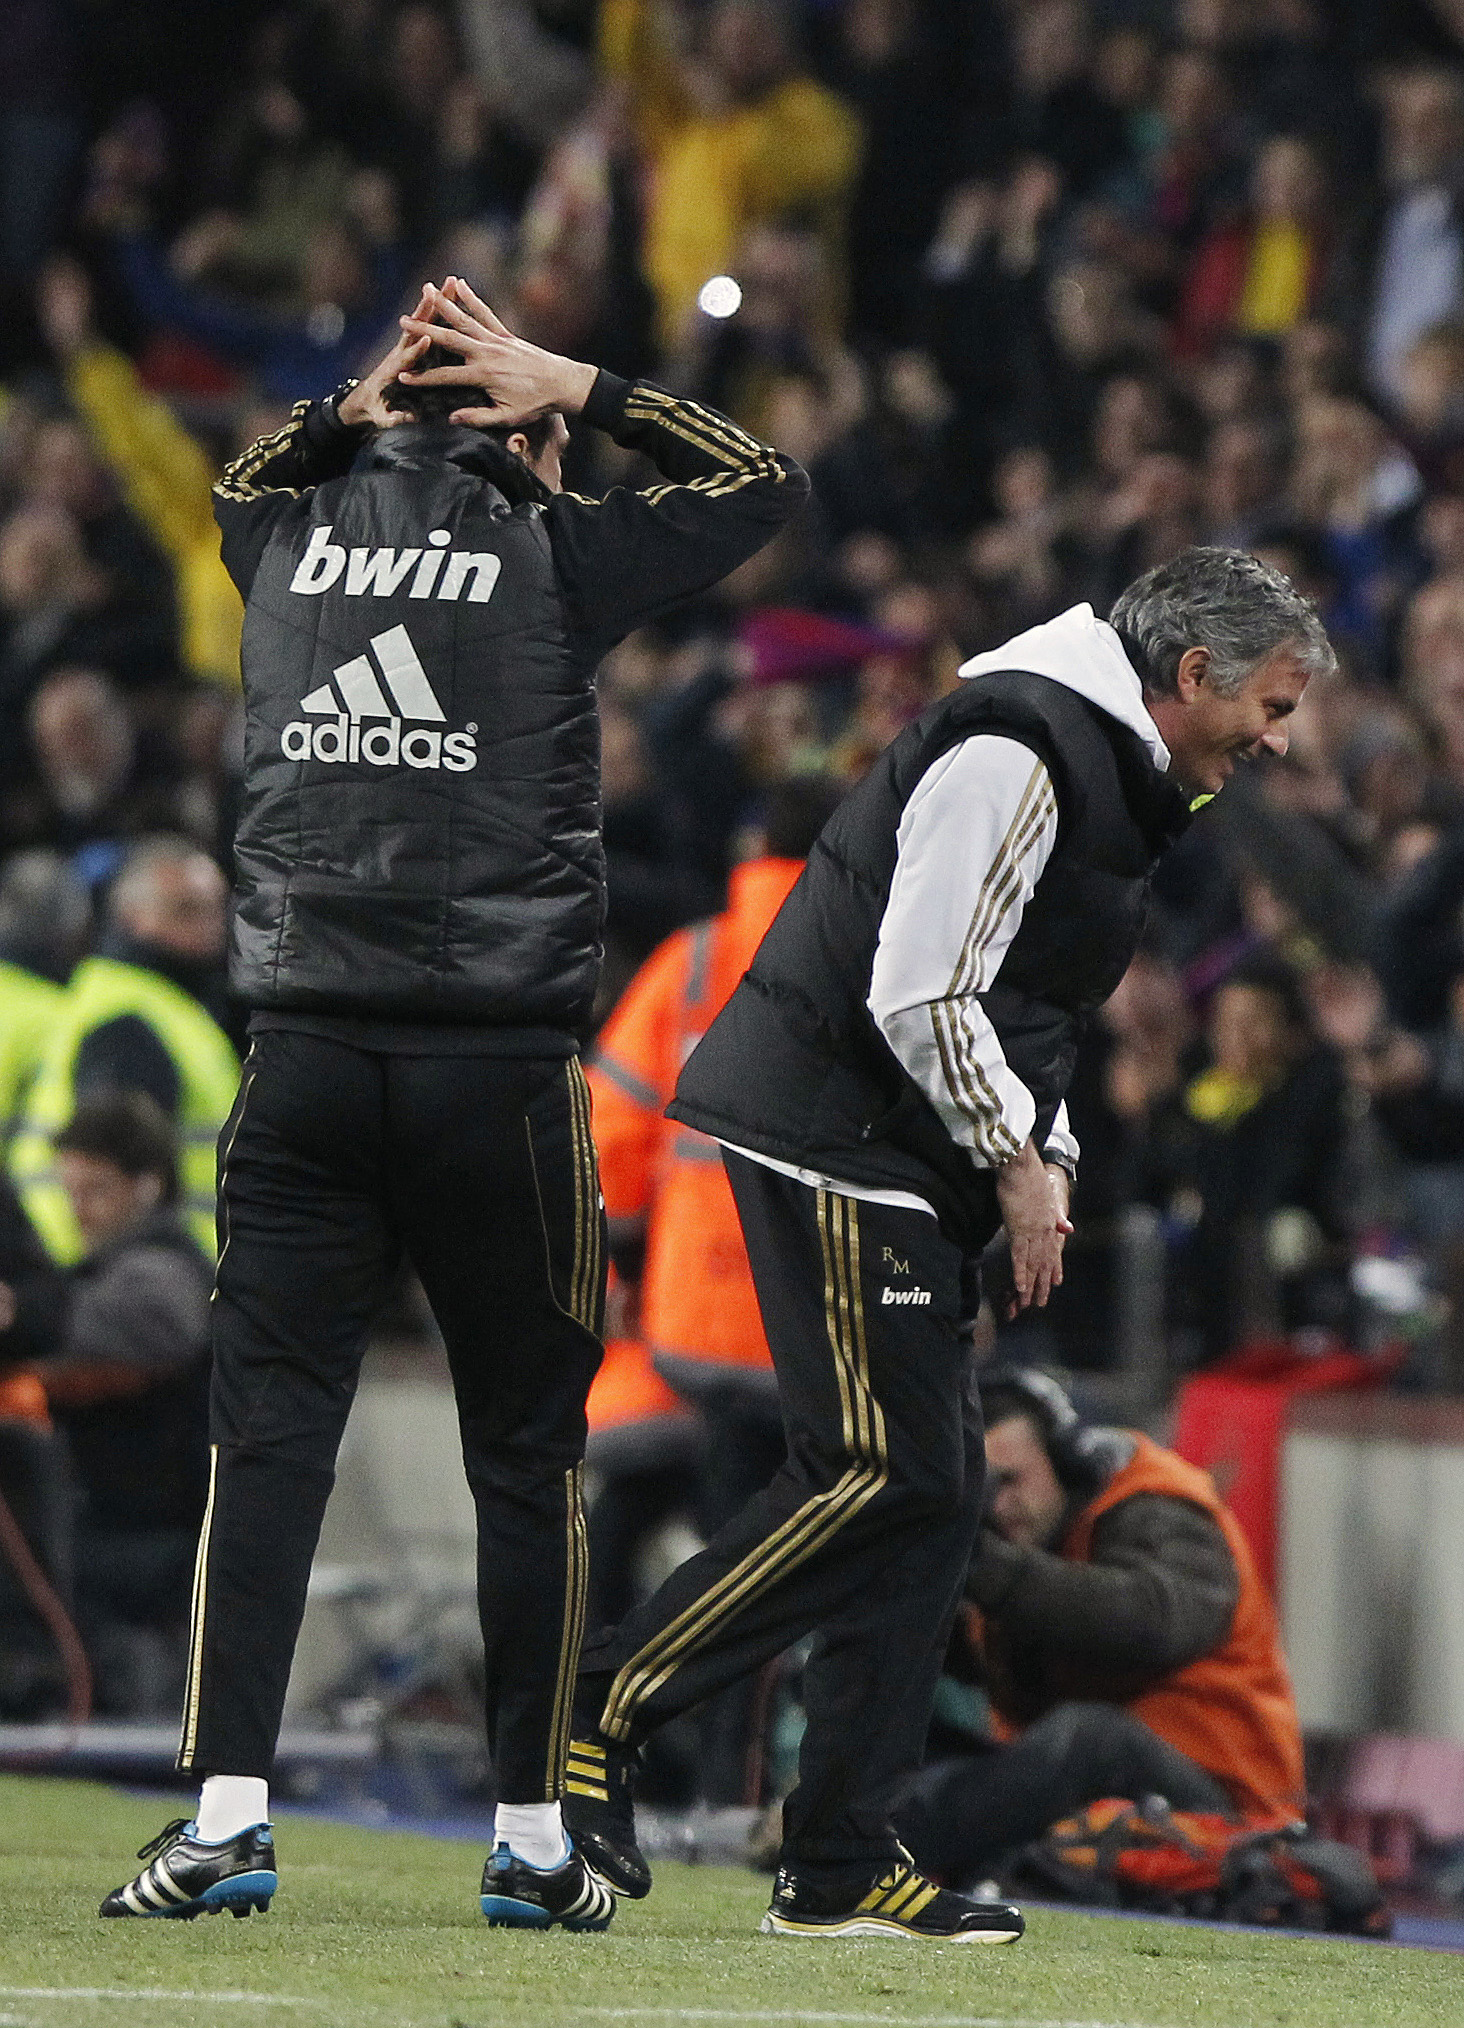 José Mourinho var i sedvanlig ordning konspiratorisk efter matchen - efter uteblivna straffar.  